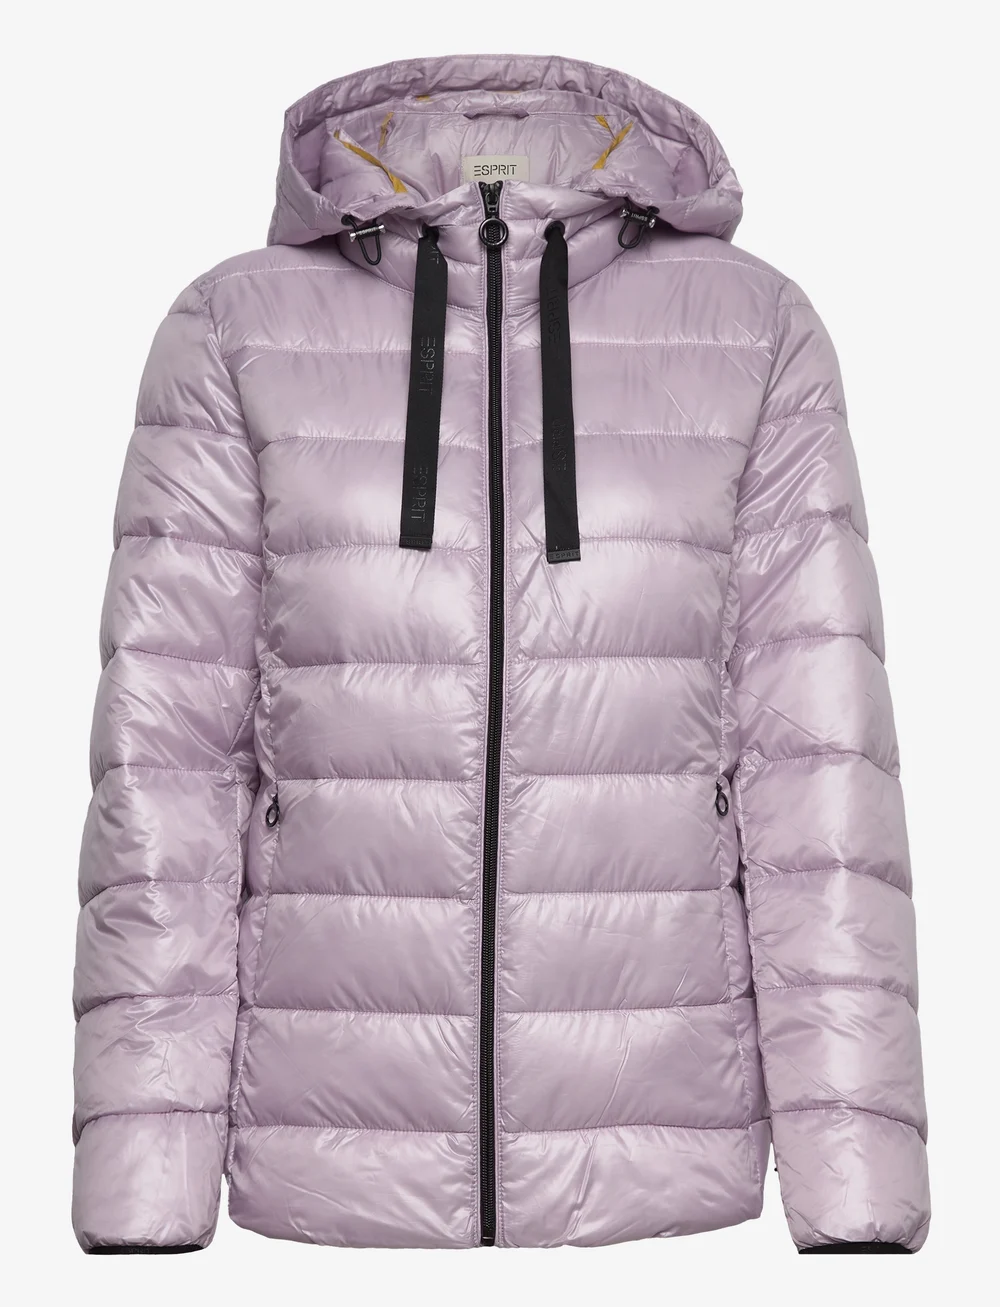 Esprit Casual Quilted Jacket With Detachable Hood - 438 kr. Køb Forede jakker Esprit Casual online på Hurtig levering &